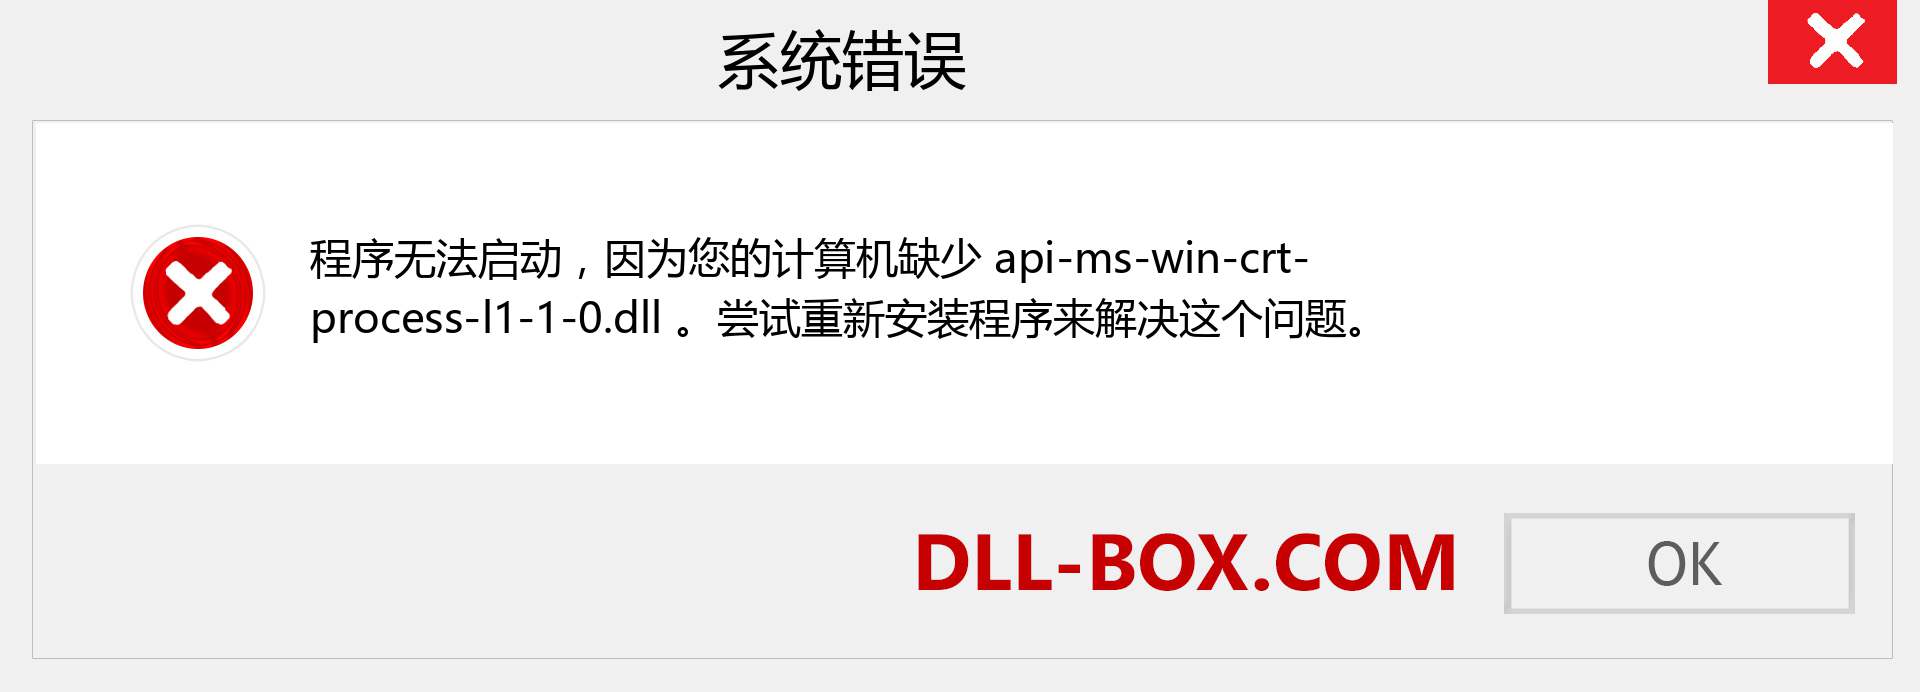 api-ms-win-crt-process-l1-1-0.dll 文件丢失？。 适用于 Windows 7、8、10 的下载 - 修复 Windows、照片、图像上的 api-ms-win-crt-process-l1-1-0 dll 丢失错误